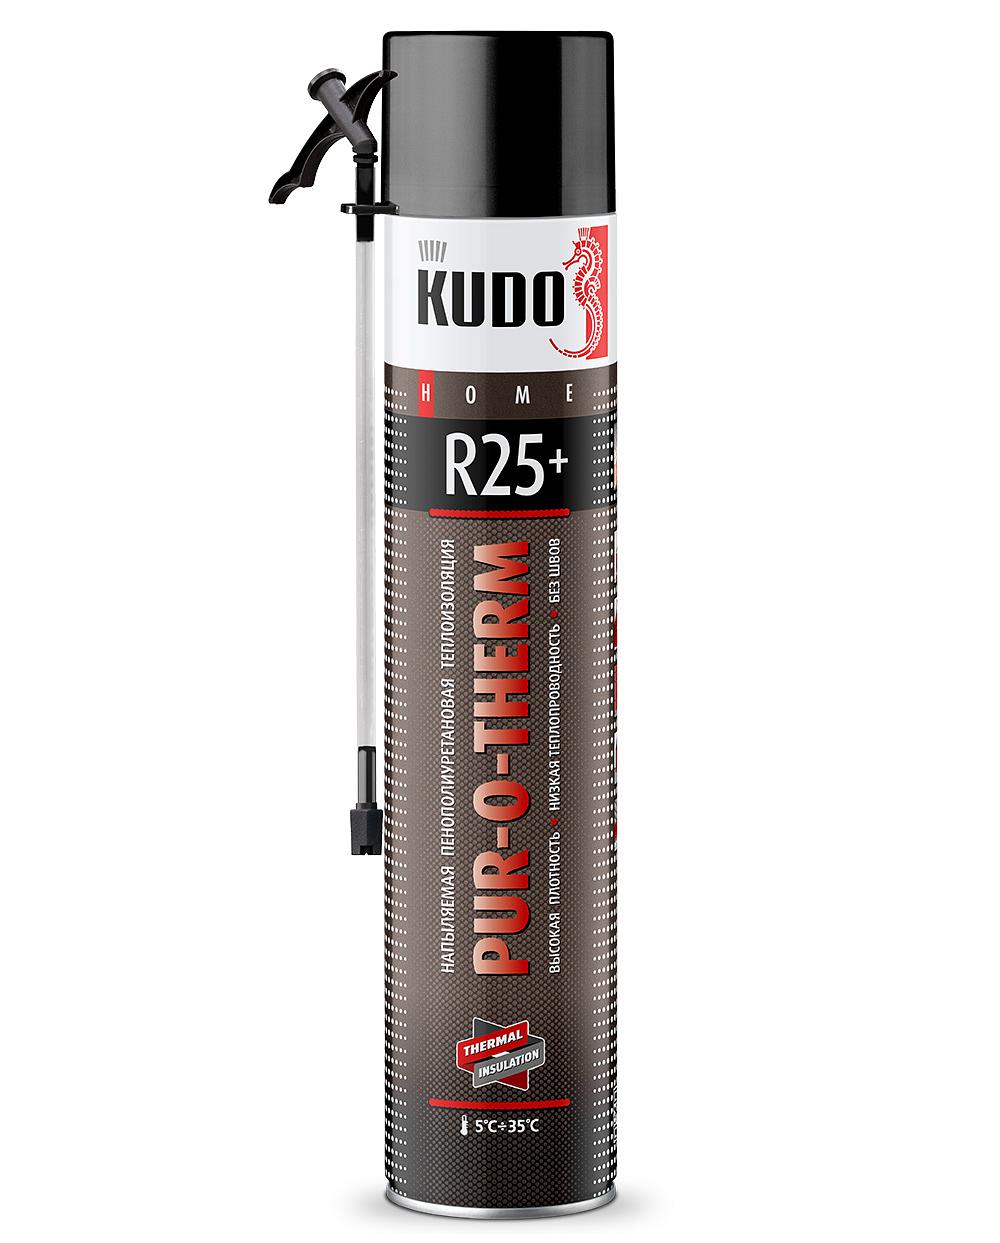 Утеплитель напыляемый PUR-O-THERM R25+ 1000мл KUDO (1/12шт)